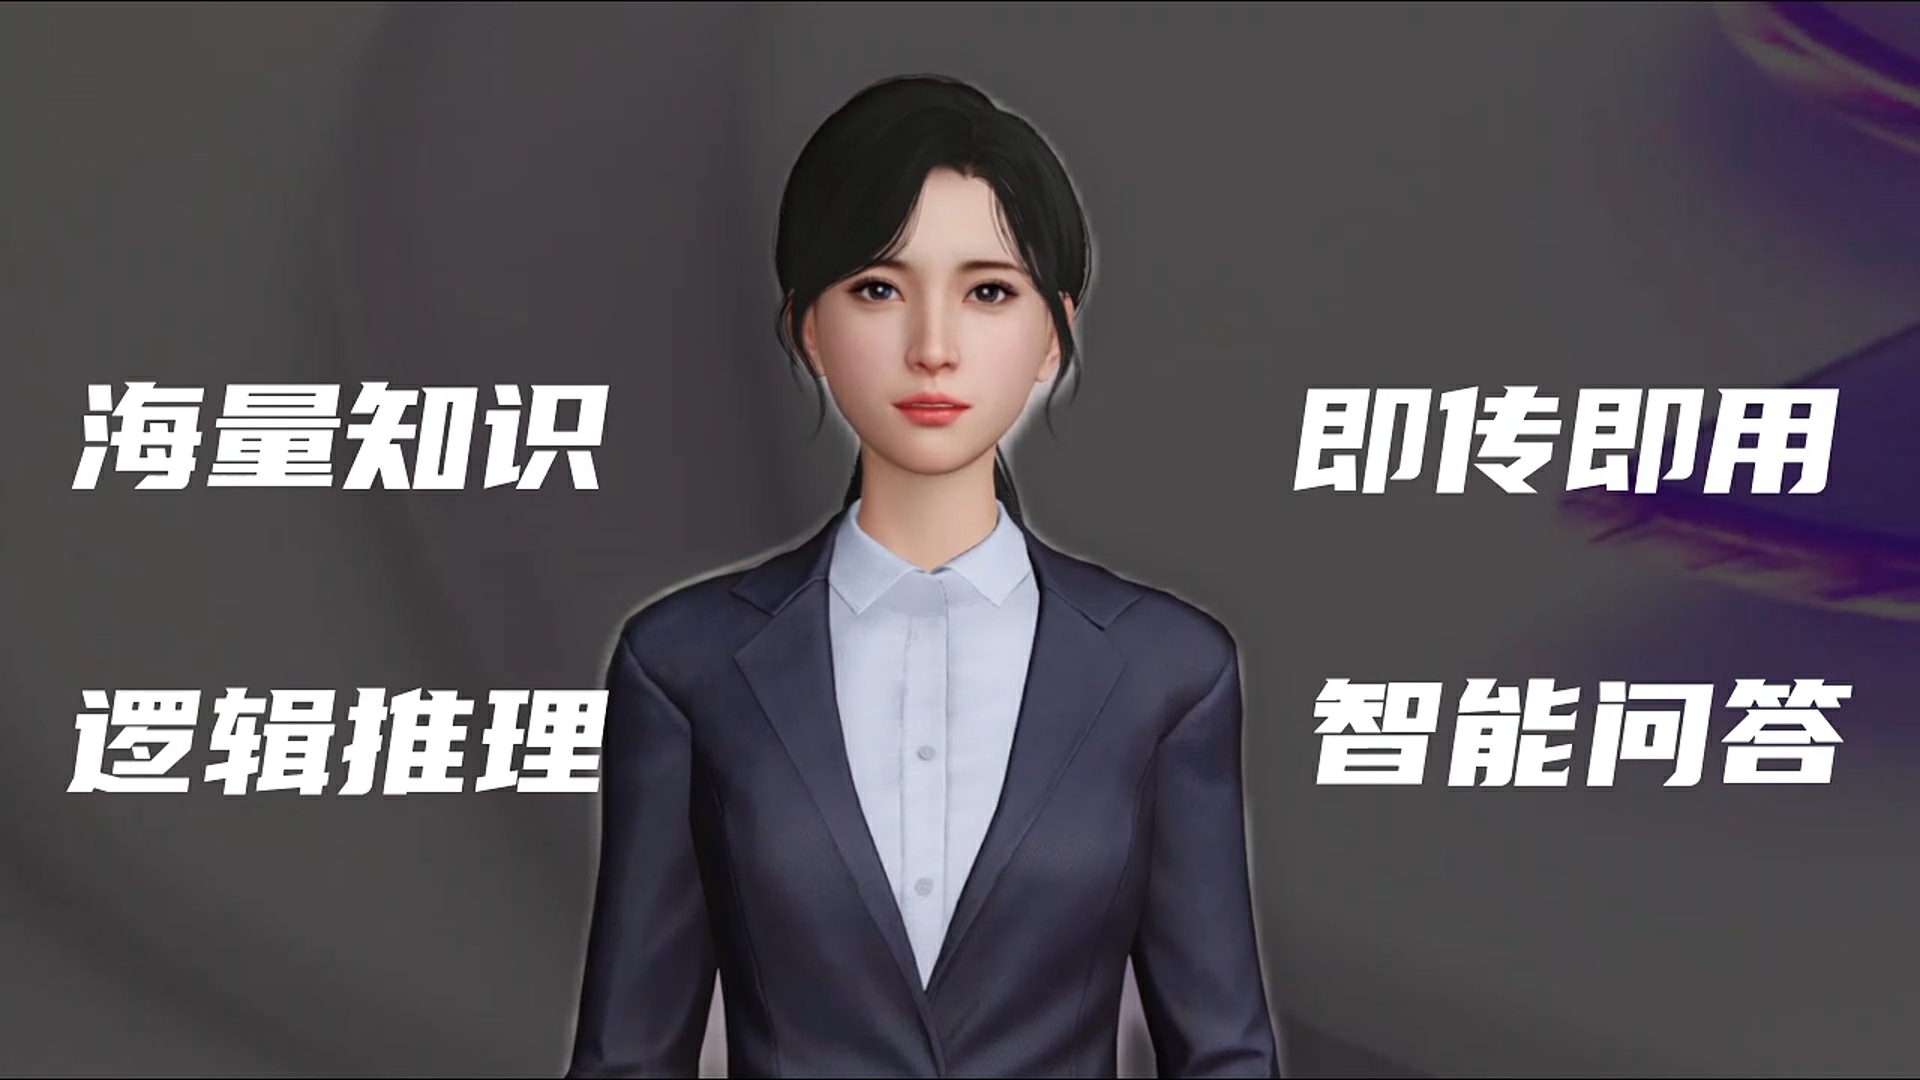 图片展示了一位穿着正式的女性虚拟角色，背景为灰色，角色前方有中文文字，但内容未详细说明。